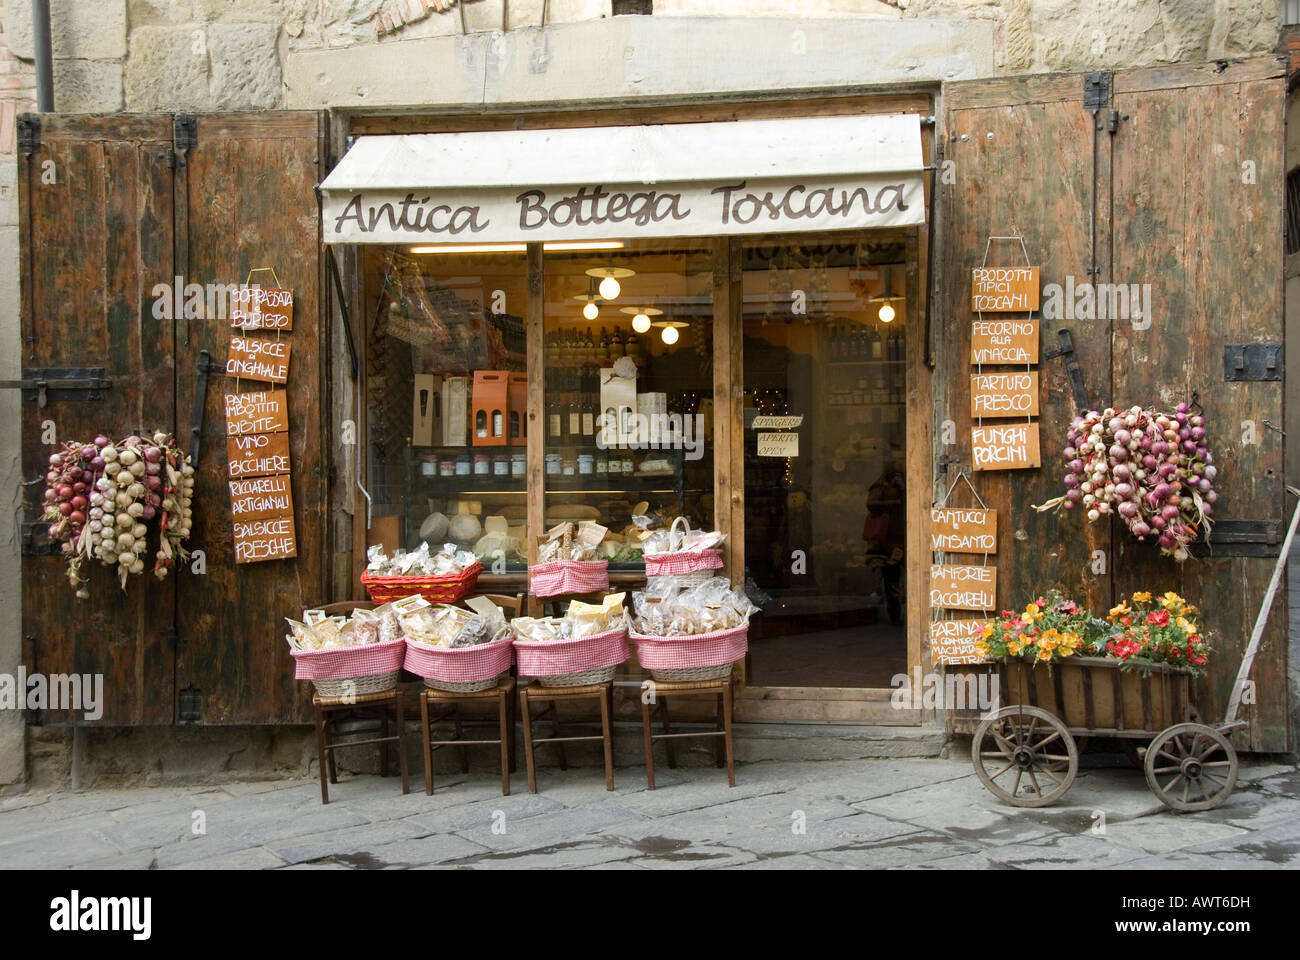 Local Tuscan produce store in Corso Italia Arezzo Tuscany Italy Stock Photo